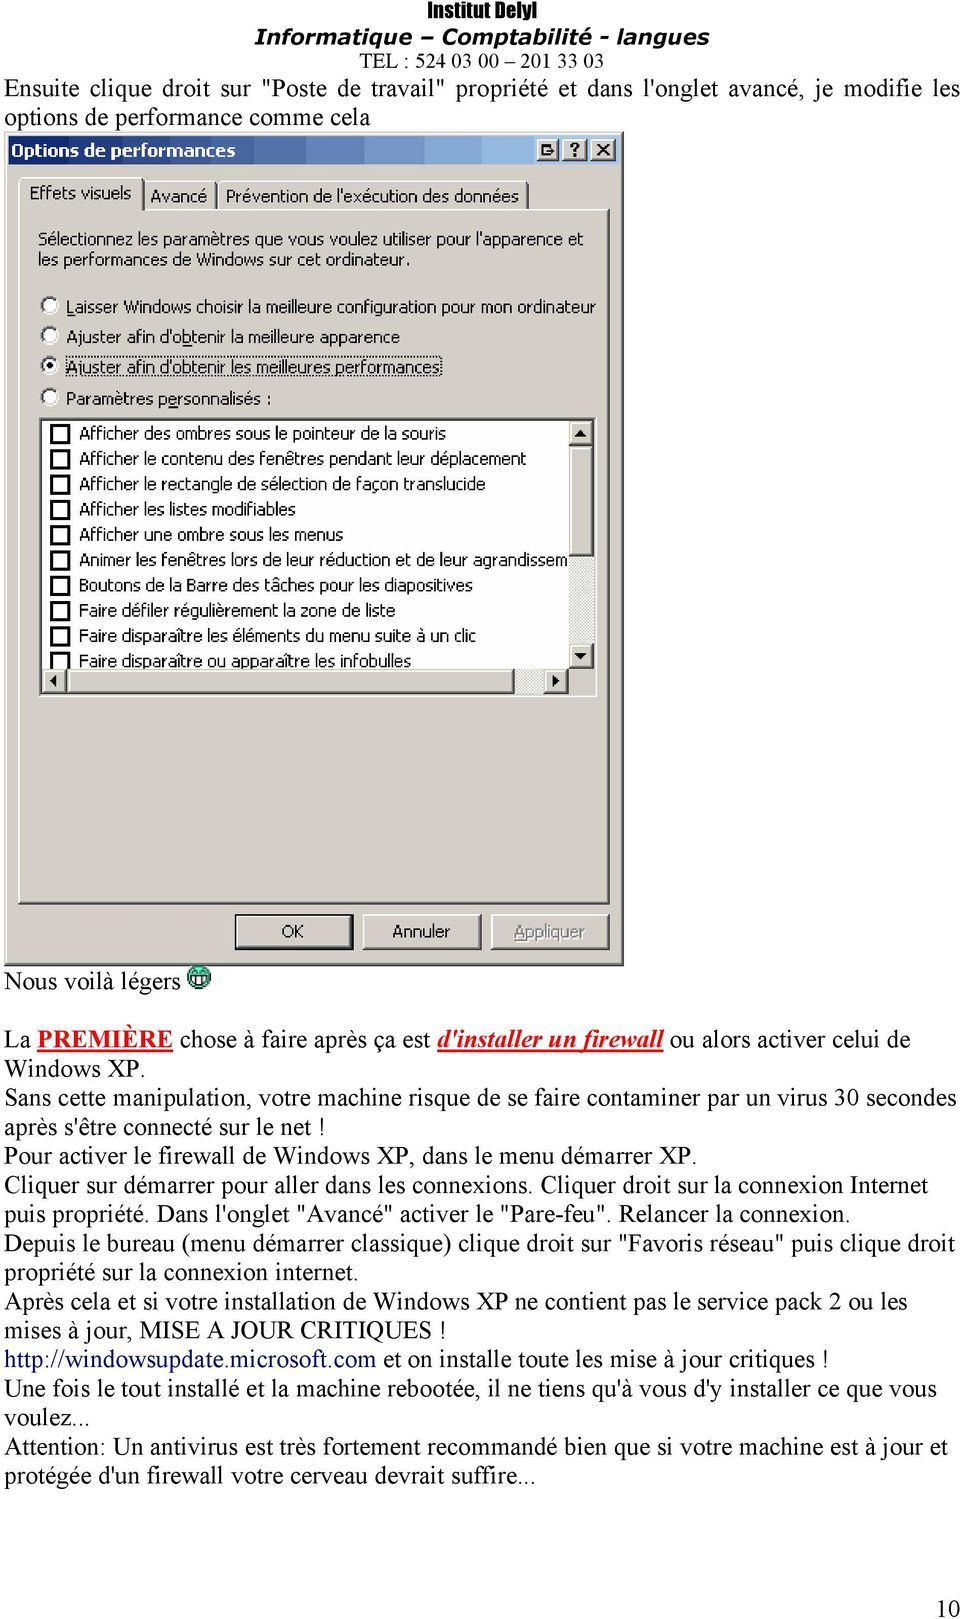 Pour activer le firewall de Windows XP, dans le menu dåmarrer XP. Cliquer sur dåmarrer pour aller dans les connexions. Cliquer droit sur la connexion Internet puis propriåtå.